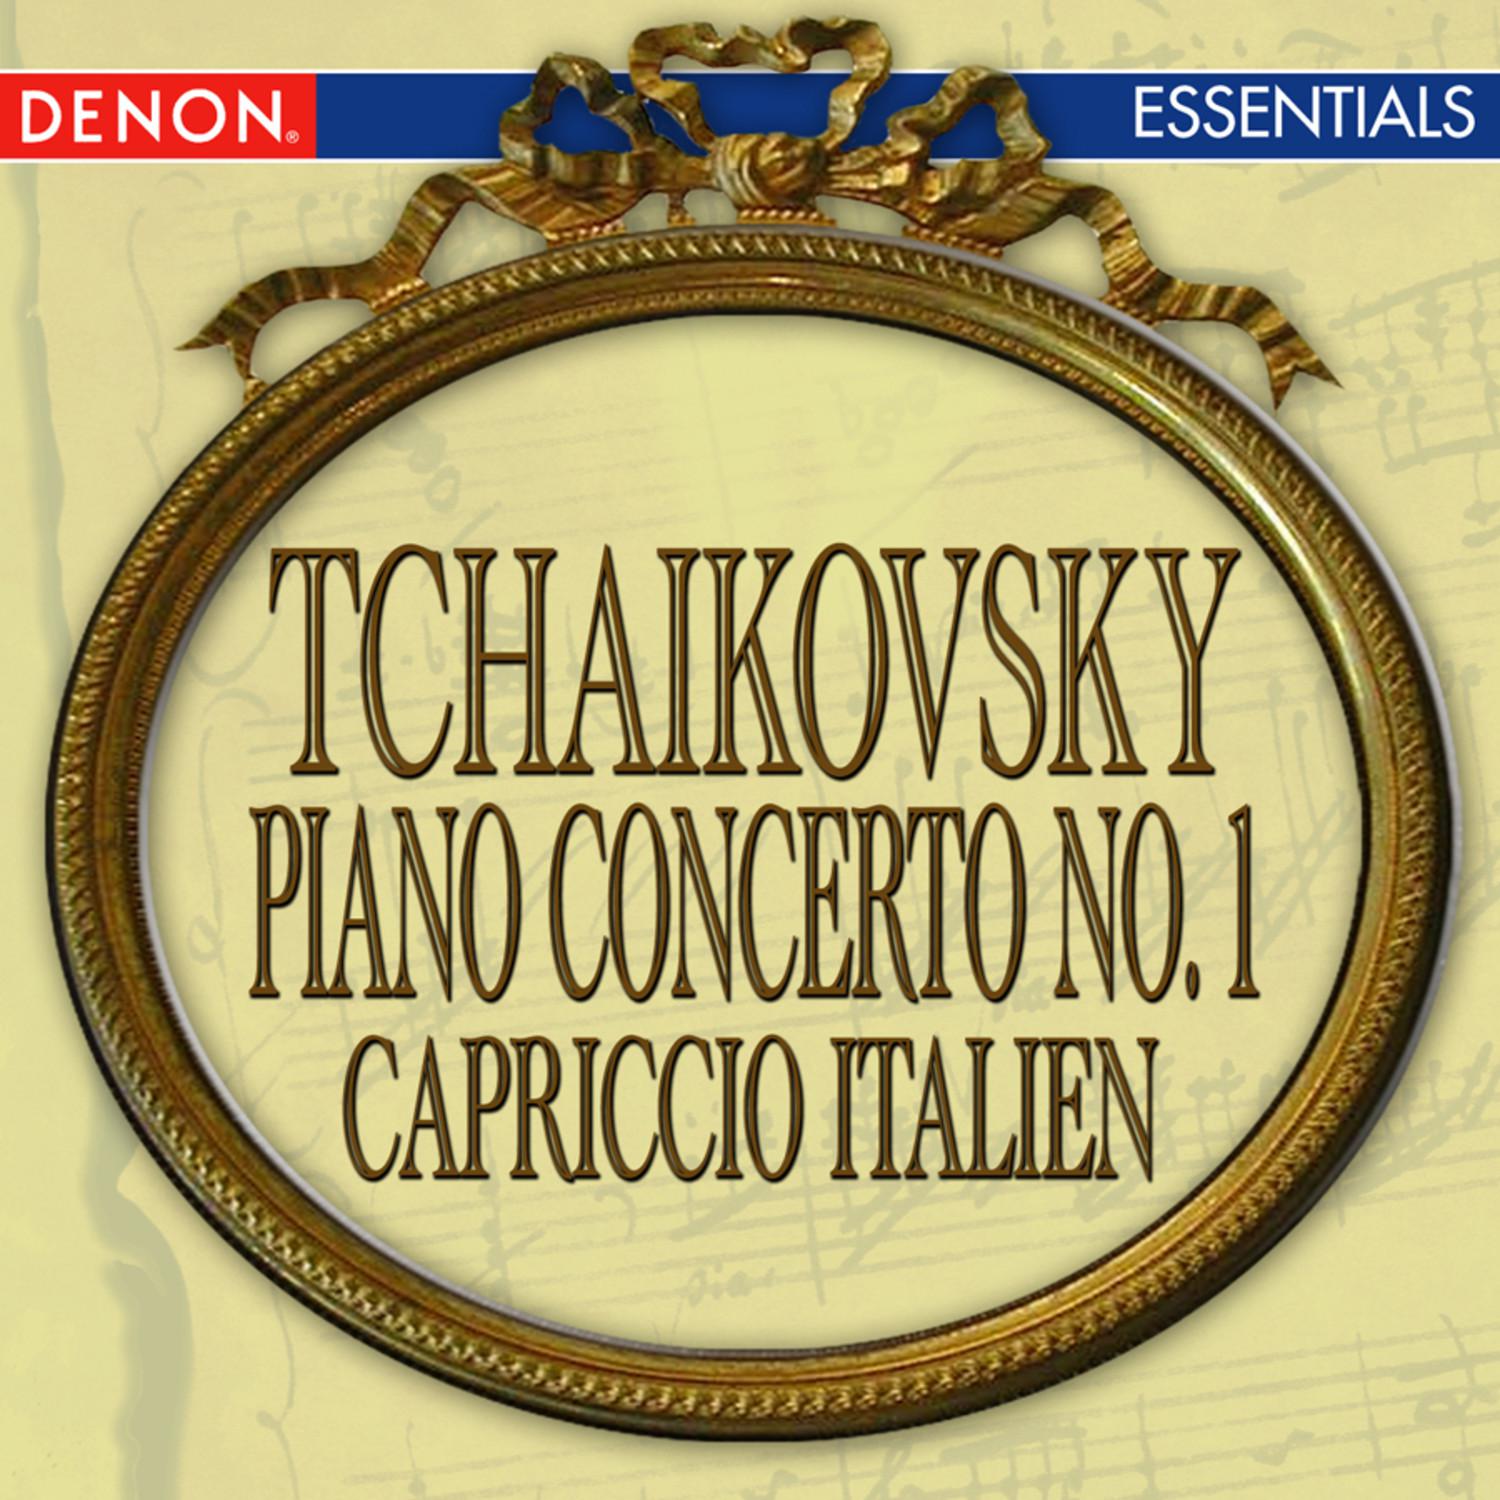 Concerto for Piano and Orchestra No. 1 in BFlat Minor, Op. 23: I. Allegro non troppo e molto maestoso  Allegro con spirito